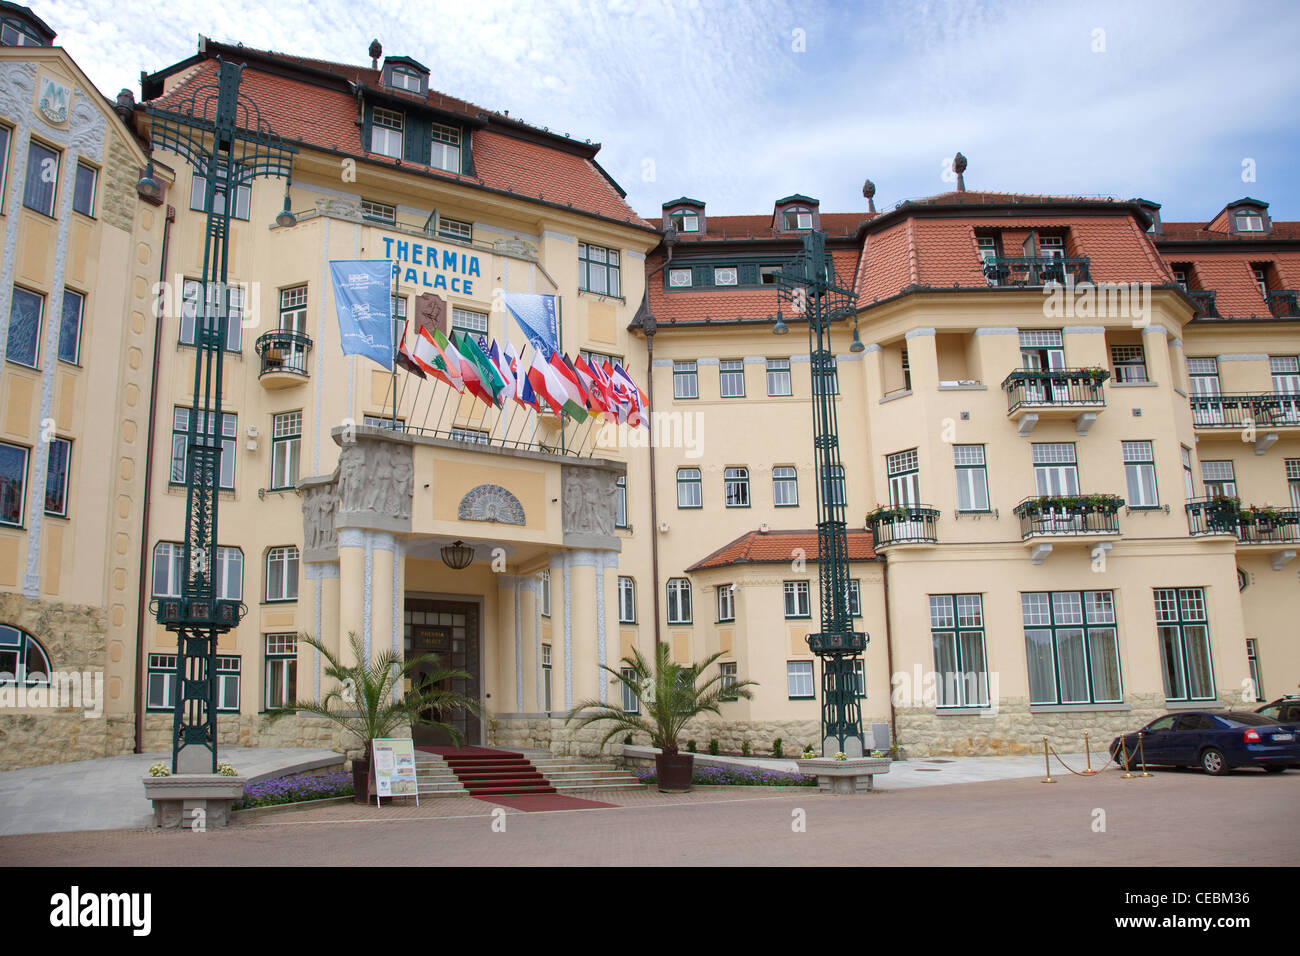 Thermia Palace. Piestany. Slovakia. Stock Photo